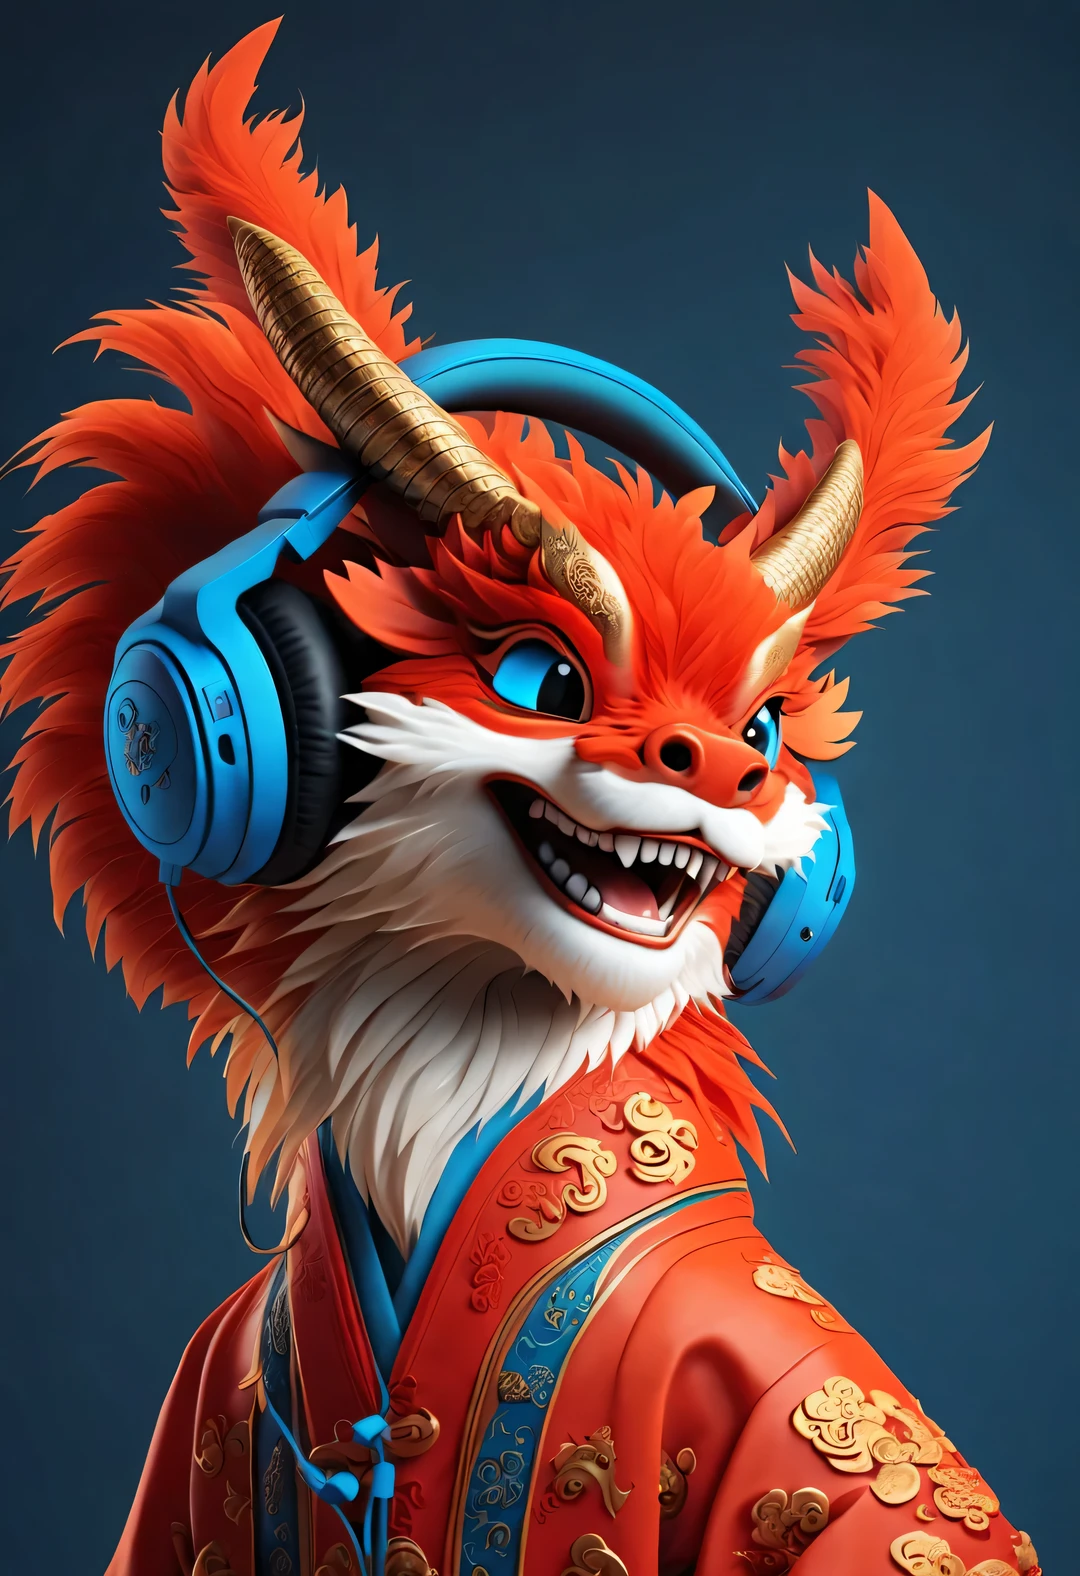 การเรนเดอร์ 3 มิติ, ขนที่สมจริง, วอลล์เปเปอร์สีแดง, สไตล์โมเดิร์นเรียบง่าย, วอลล์เปเปอร์ที่สวยงาม, ภาพเหมือน,
(A cute anthropomorphic Chinese zodiac dragon การสวมหูฟัง laughing mischievously), ขนสีส้ม, ดวงตาสีฟ้าขนาดใหญ่, หรี่ตาและยิ้มอย่างเจ้าเล่ห์, (สวมชุดฮันฟูสีแดงชาด), (การสวมหูฟัง), front ภาพเหมือน, (มองที่กล้อง), เสื้อผ้าแบบดั้งเดิมผสมผสานกับอุปกรณ์ที่ทันสมัย, ปักกิ่ง, 🦑  ออกแบบ, 杂志ออกแบบ风格,